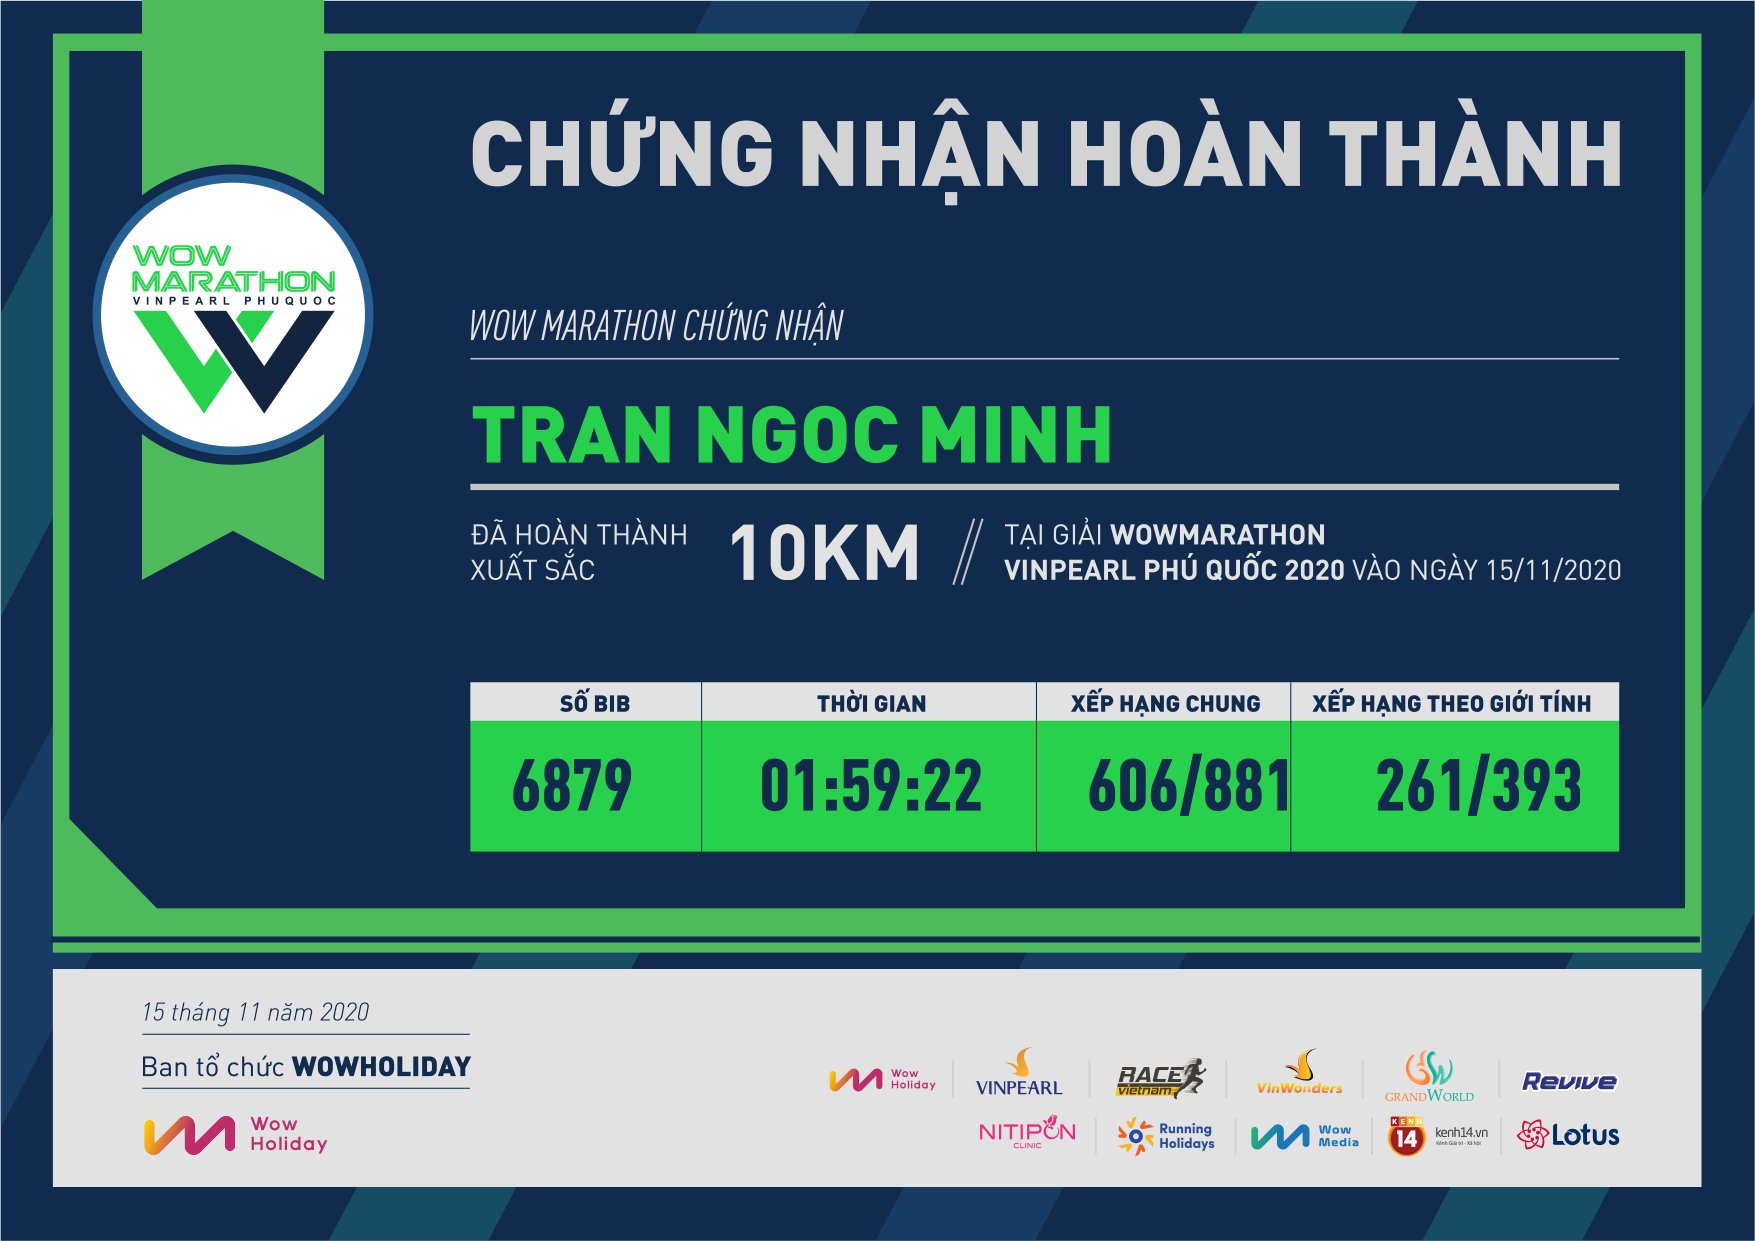 6879 - TRAN NGOC MINH